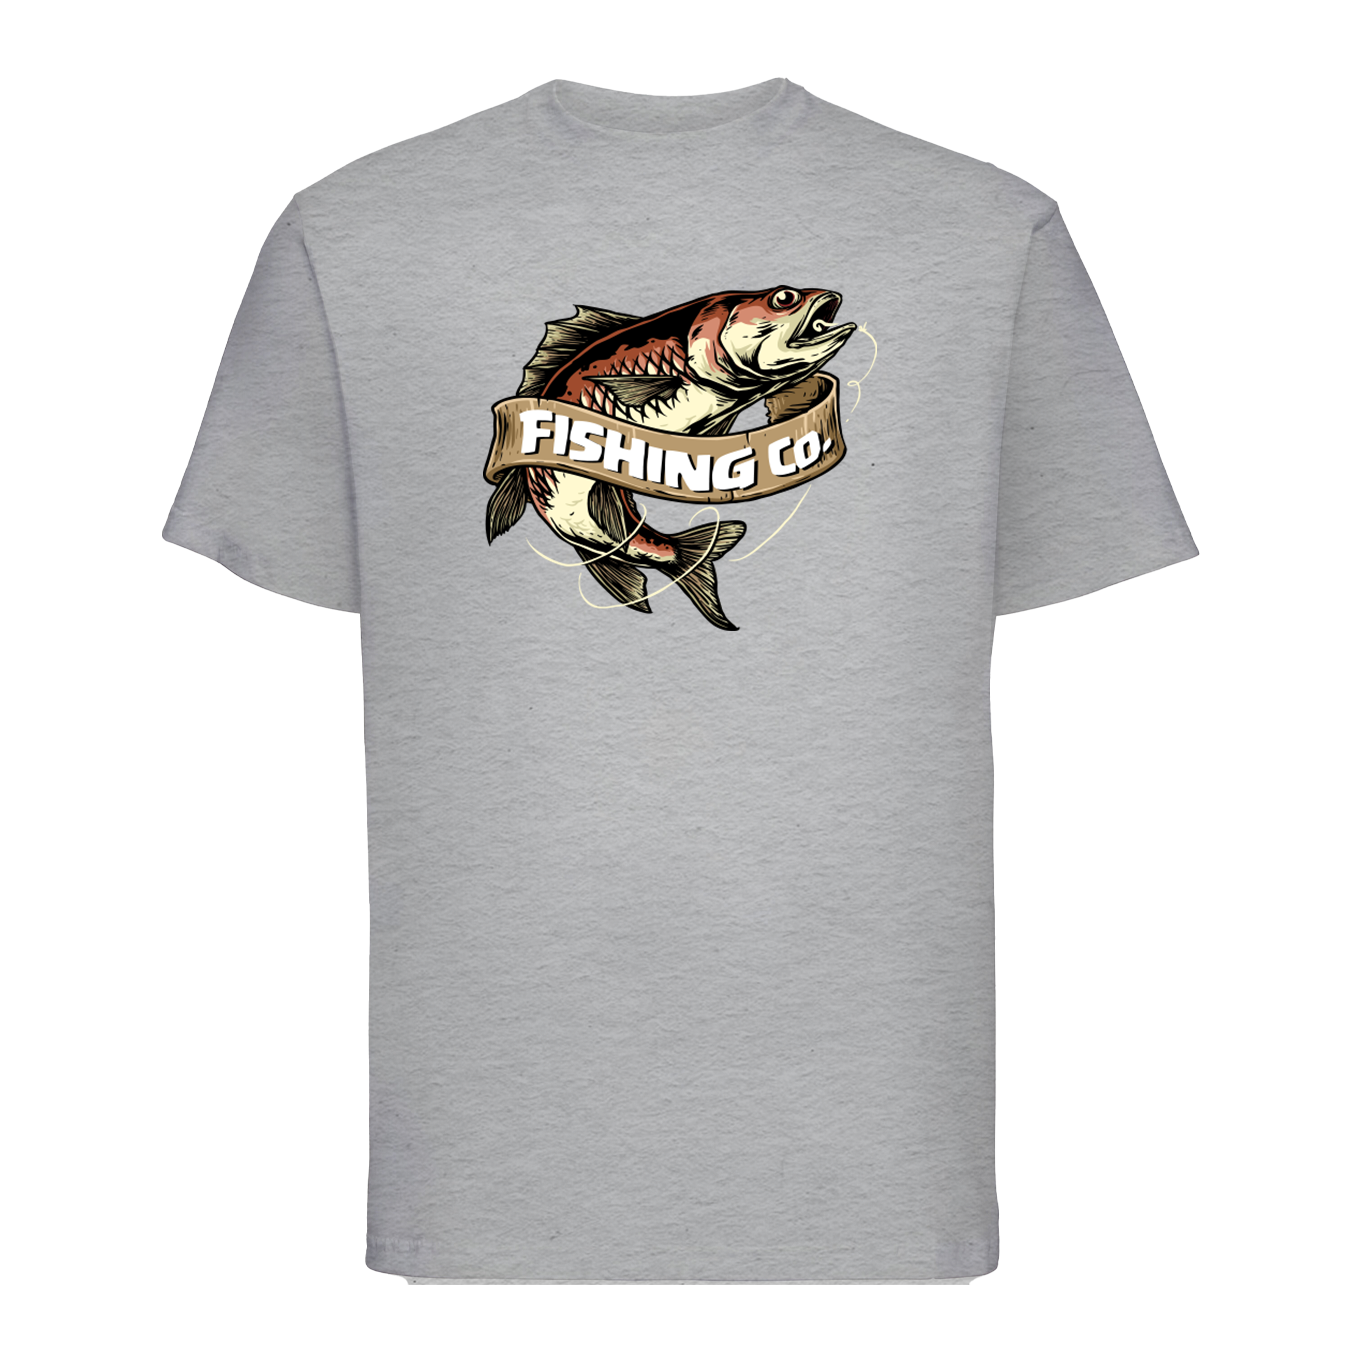 T-shirt "Fishing Co."